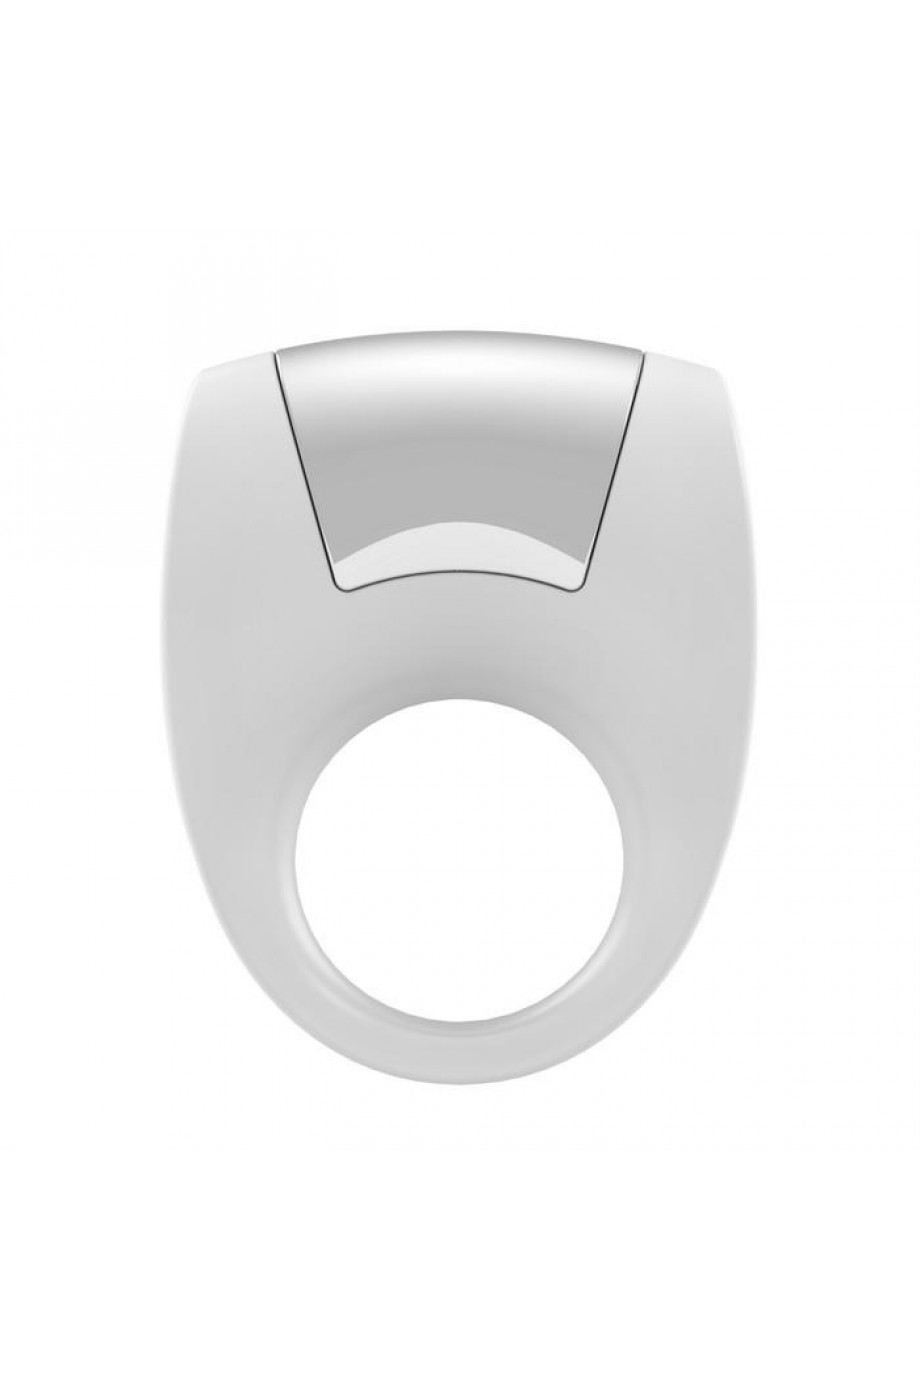 Эрекционное кольцо OVO с удобной кнопкой включения и сильной вибрацией, силиконовое, белое